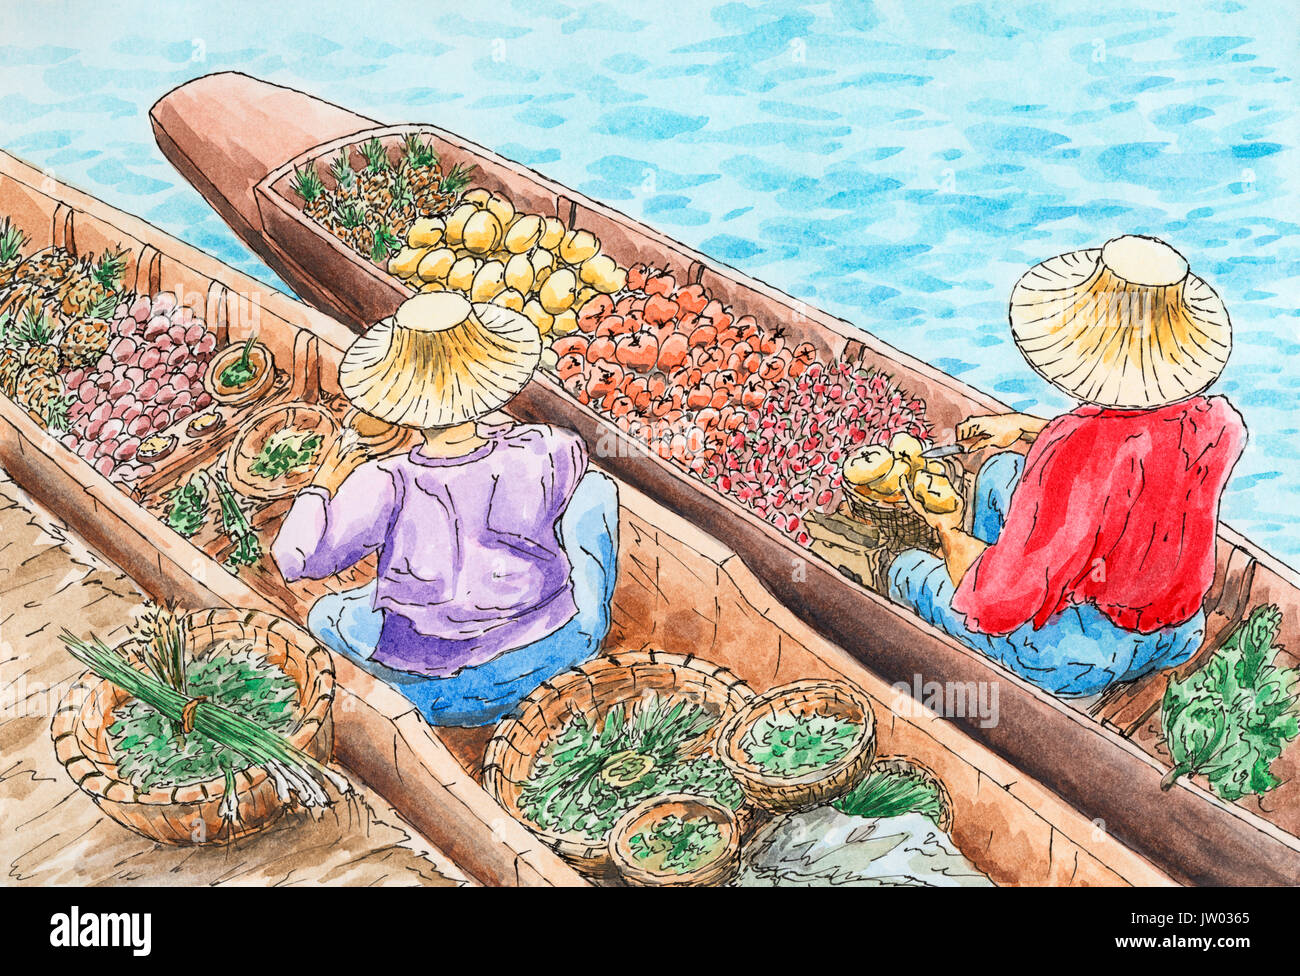 Marché flottant traditionnel thaï. Deux personnes vendant des fruits et légumes à partir d'un bateau. Encre et aquarelle sur papier rugueux. Banque D'Images